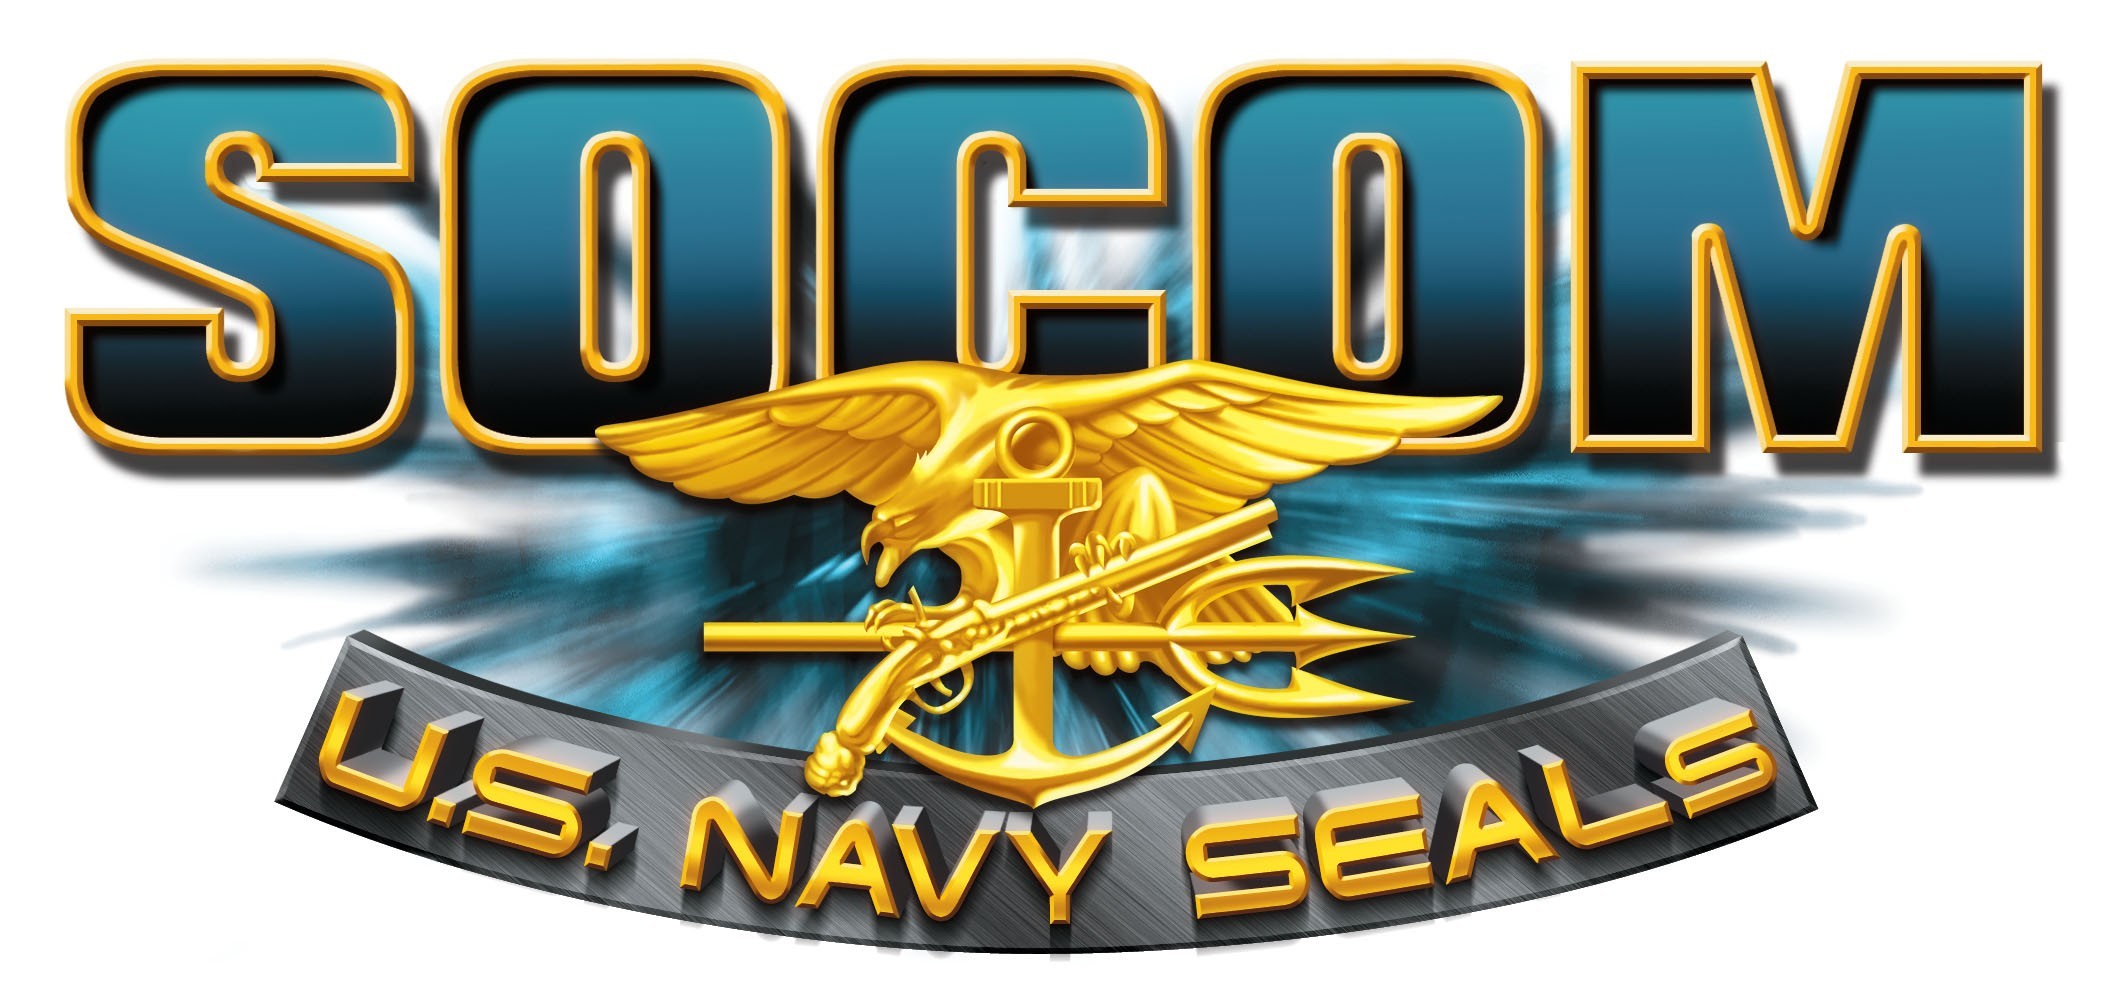 SOCOM II: U.S. Navy SEALs, SOCOM Wiki